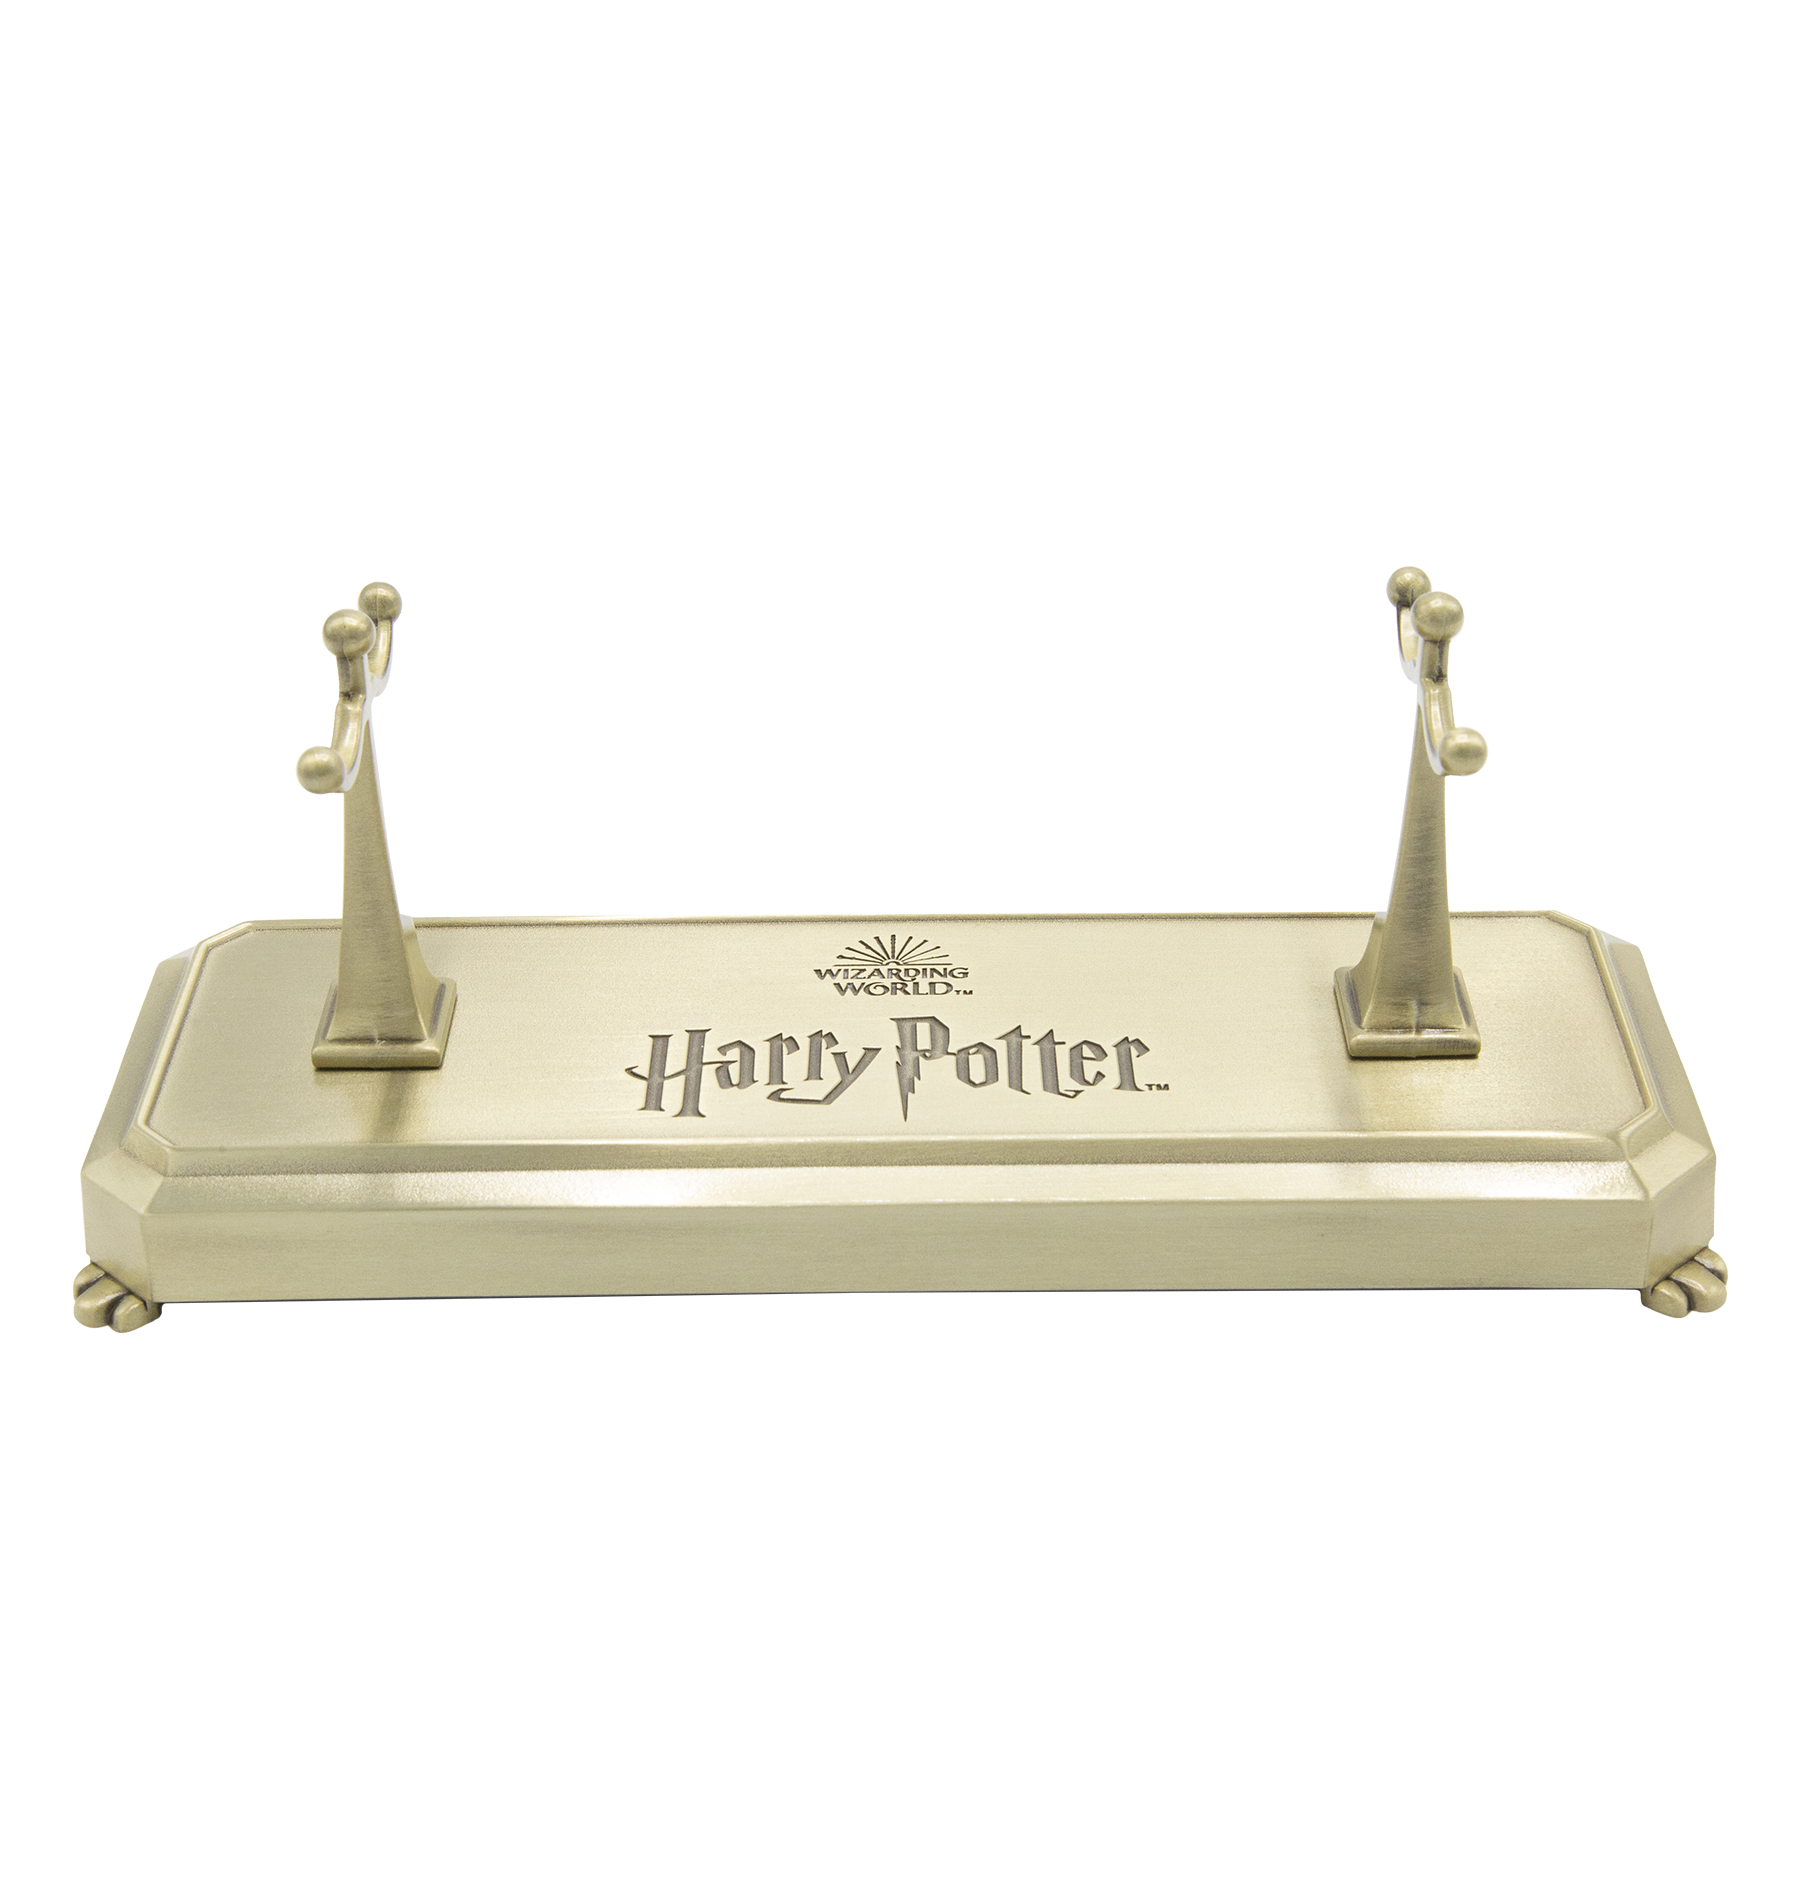 Harry Potter - Magic Wand Stand Hufflepuff 